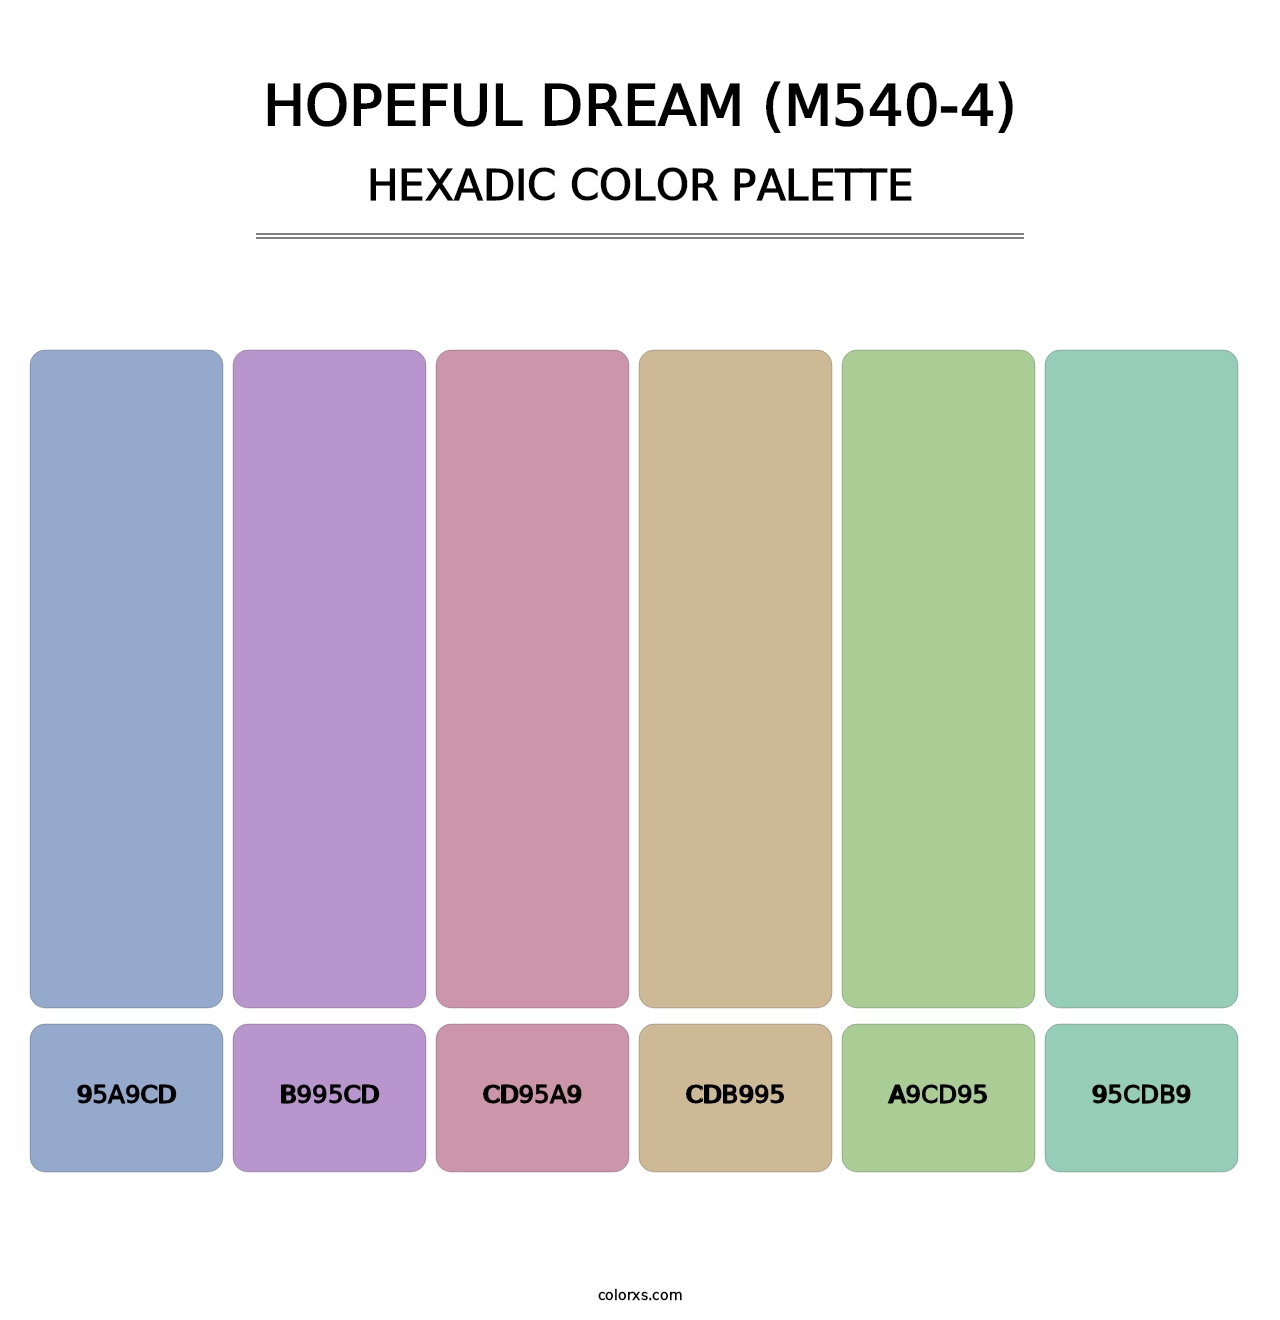 Hopeful Dream (M540-4) - Hexadic Color Palette